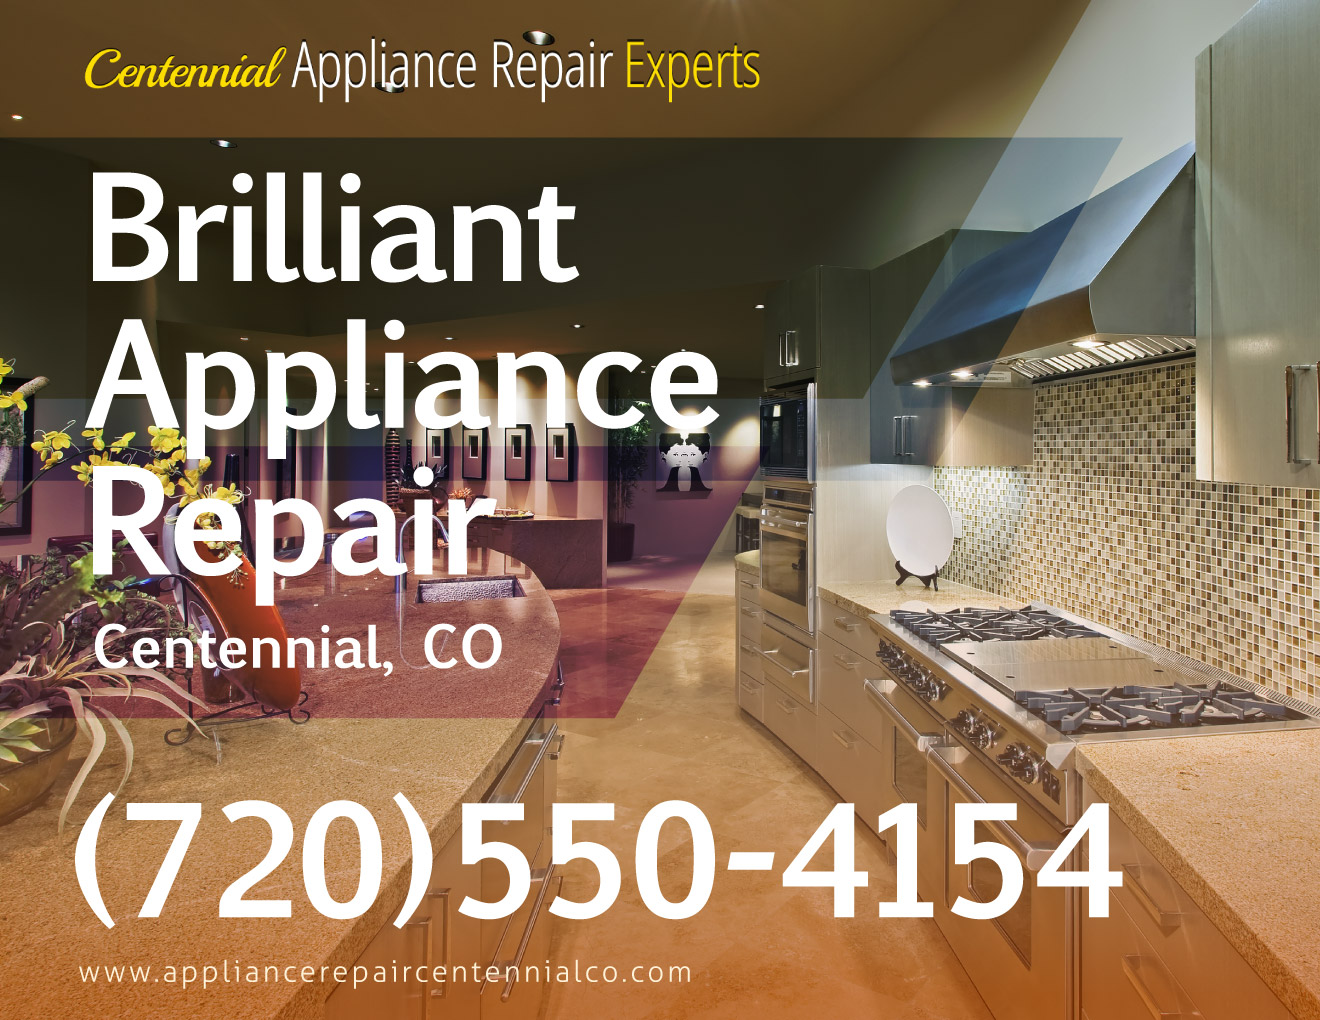 Centennial Appliance Repair Experts